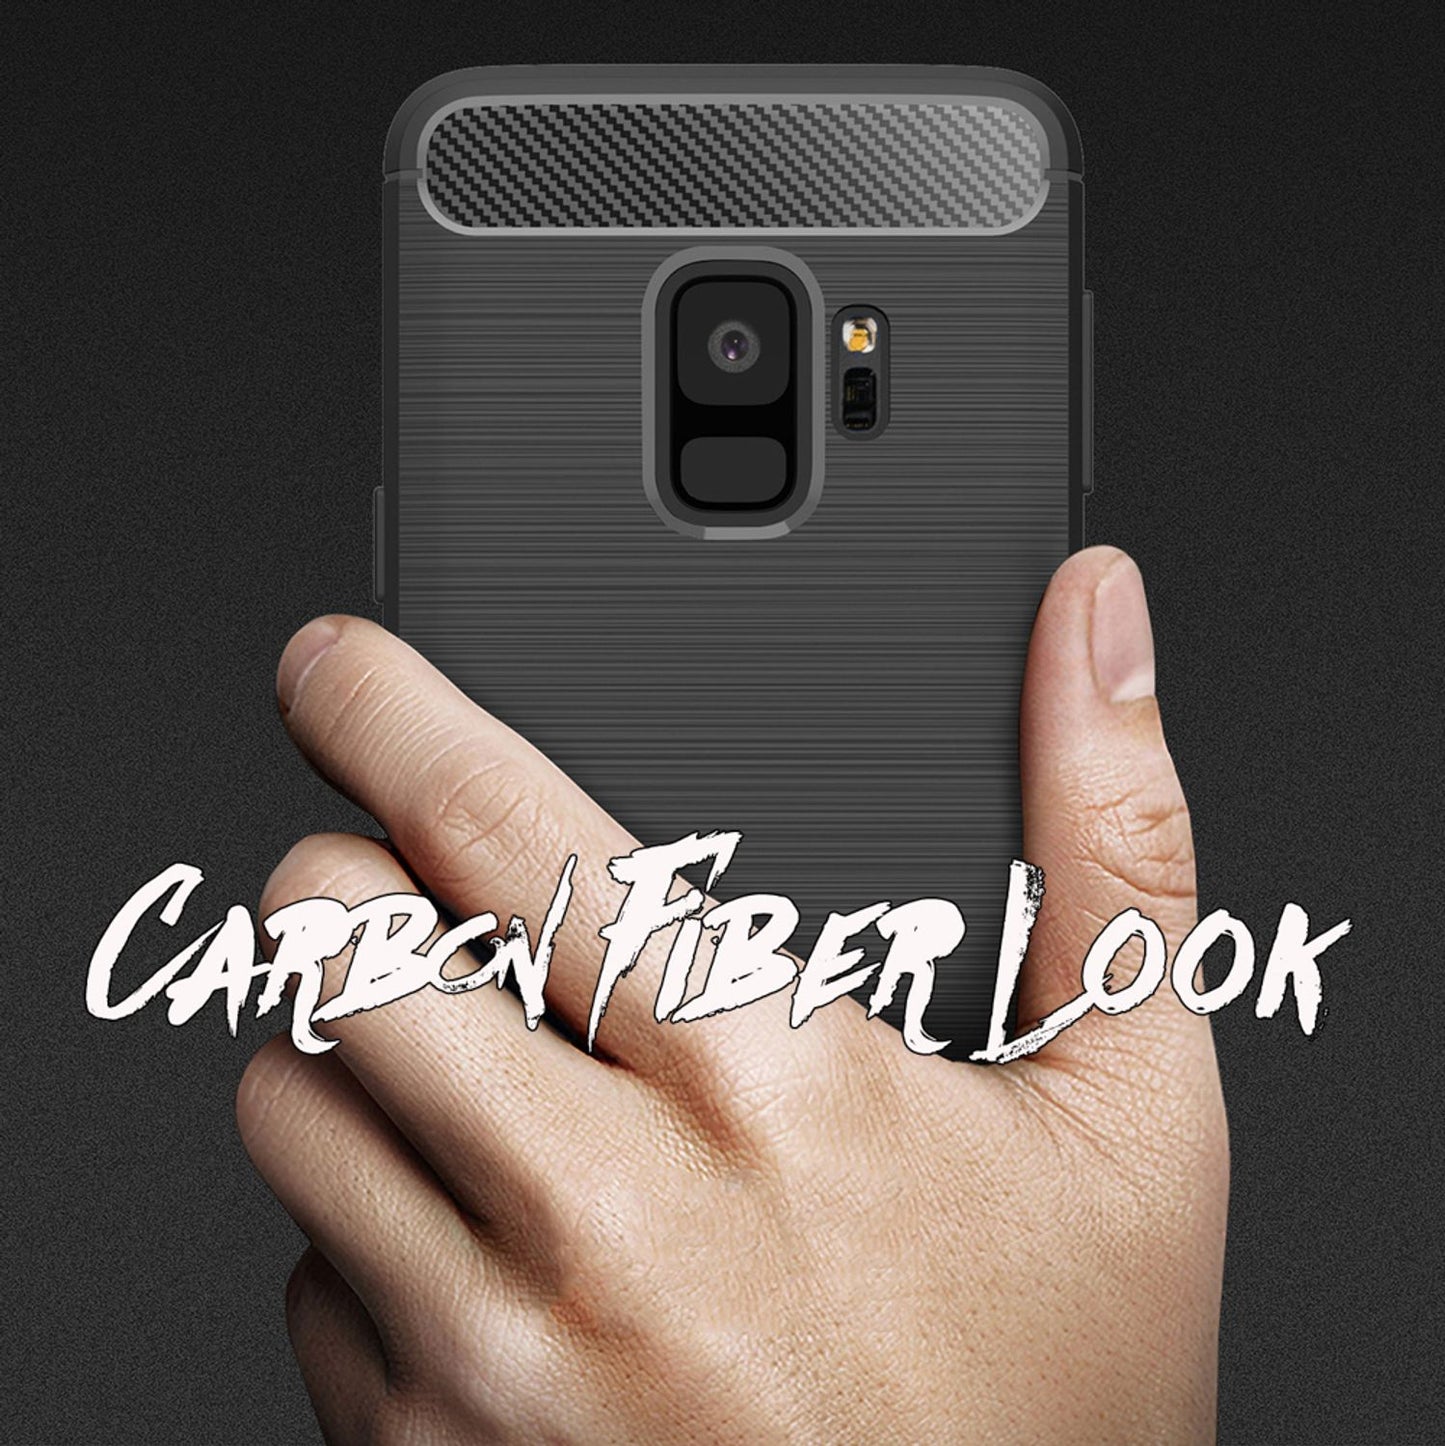 Samsung Galaxy S9 Handy Hülle von NALIA, Ultra Slim Silikon Case Cover Schutz